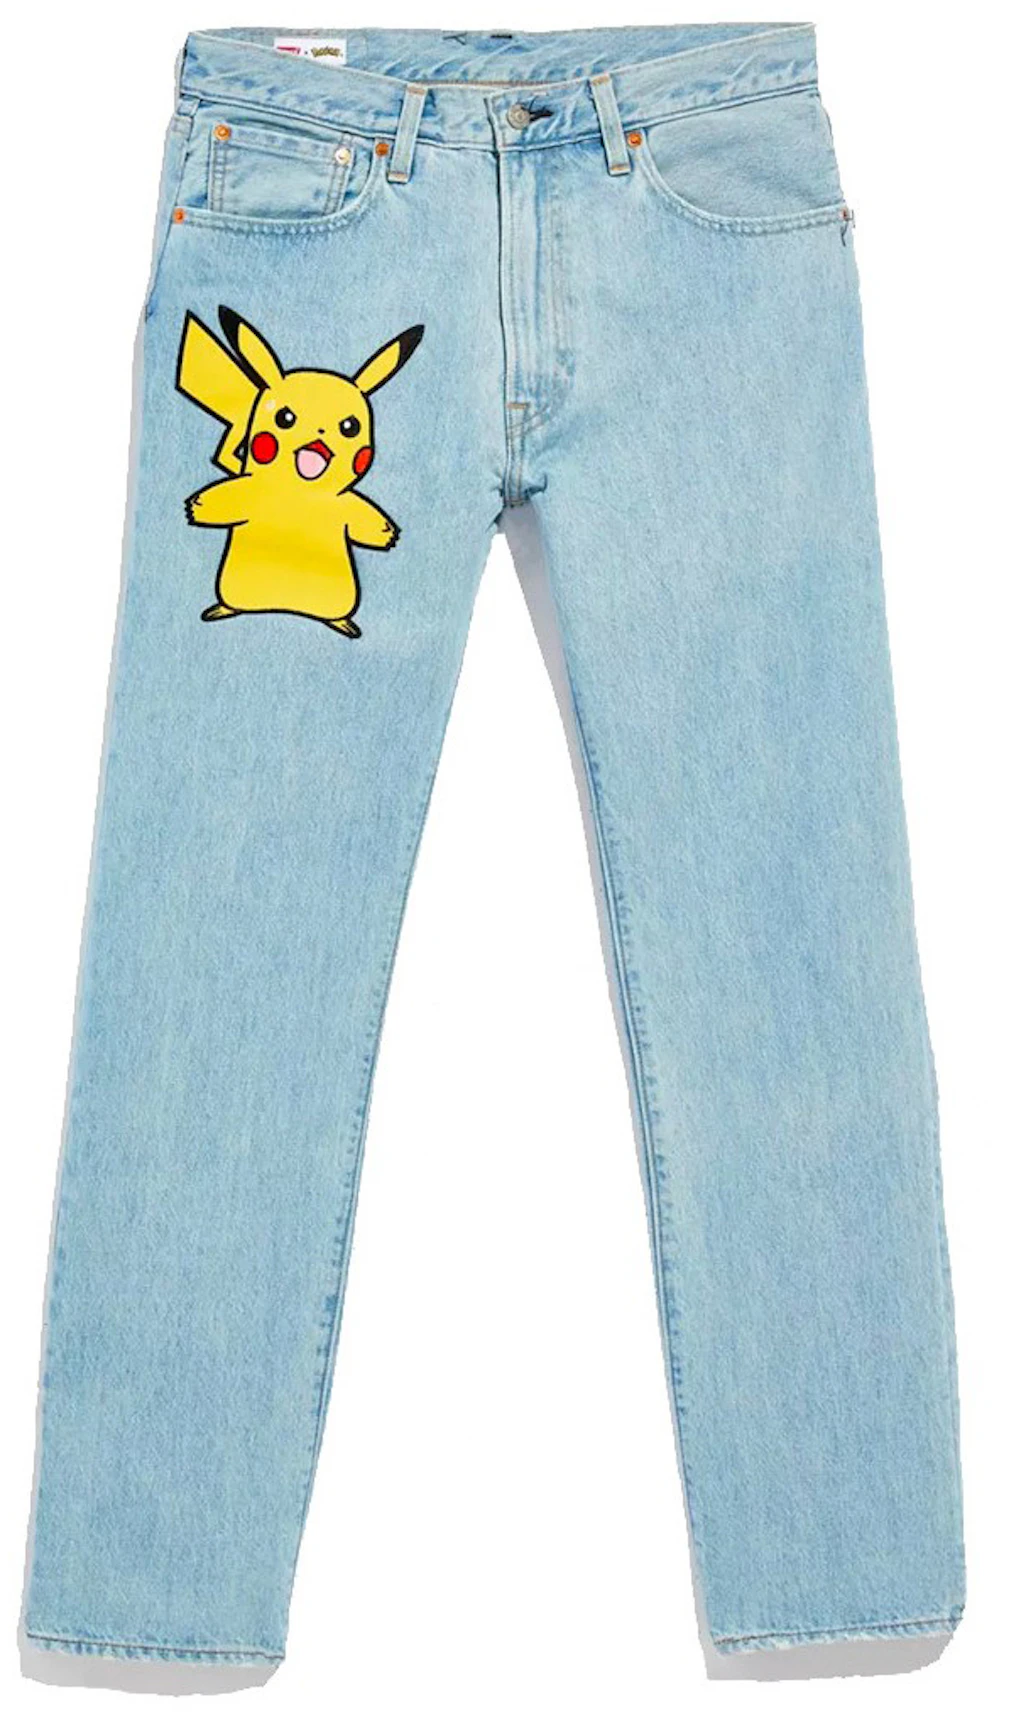 Levis x Pokémon 551Z Authentic Straight Jeans Light Wash - SS21 - US